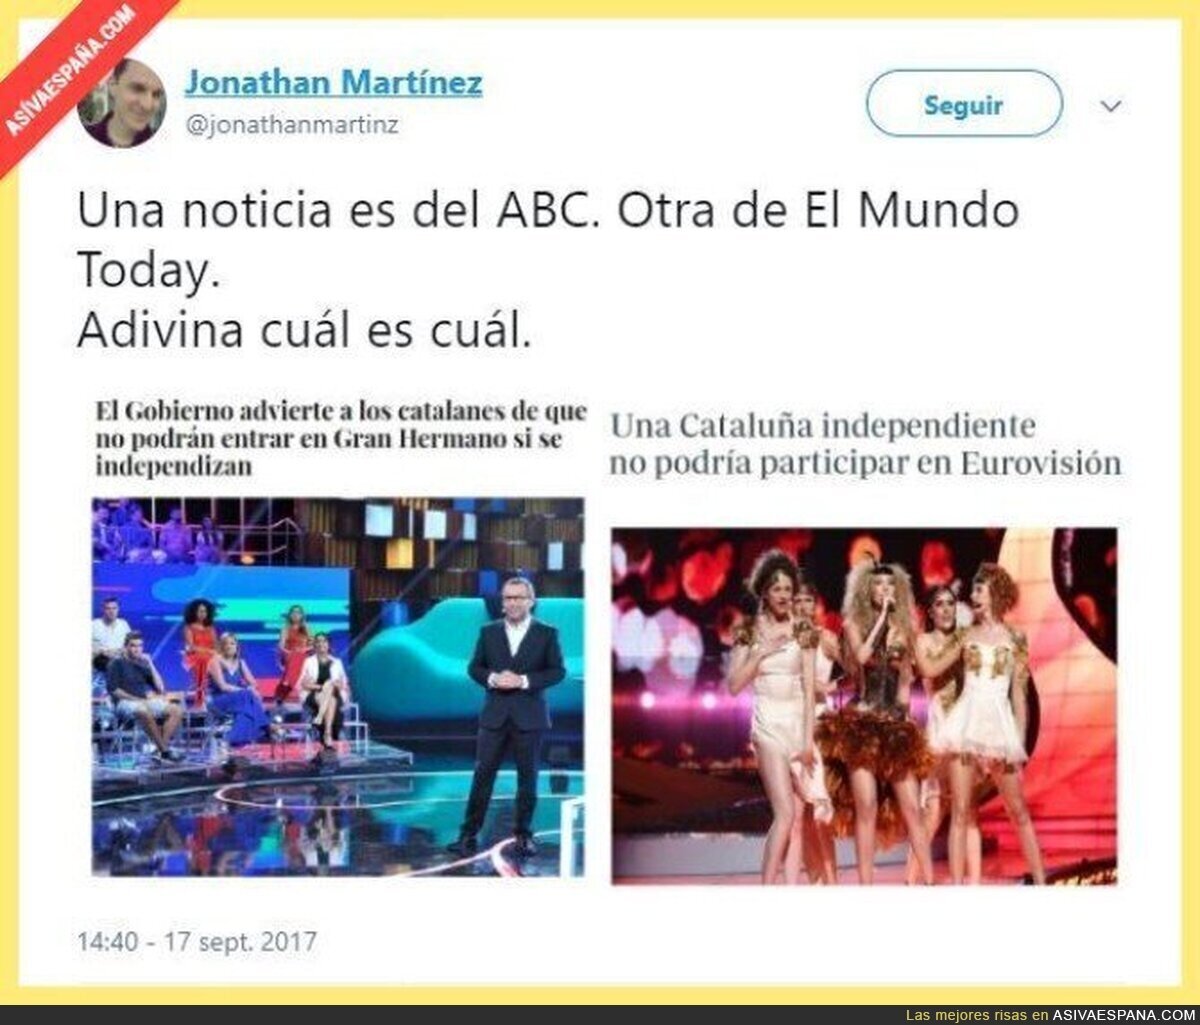 ABC quitándole nicho de mercado a El Mundo Today